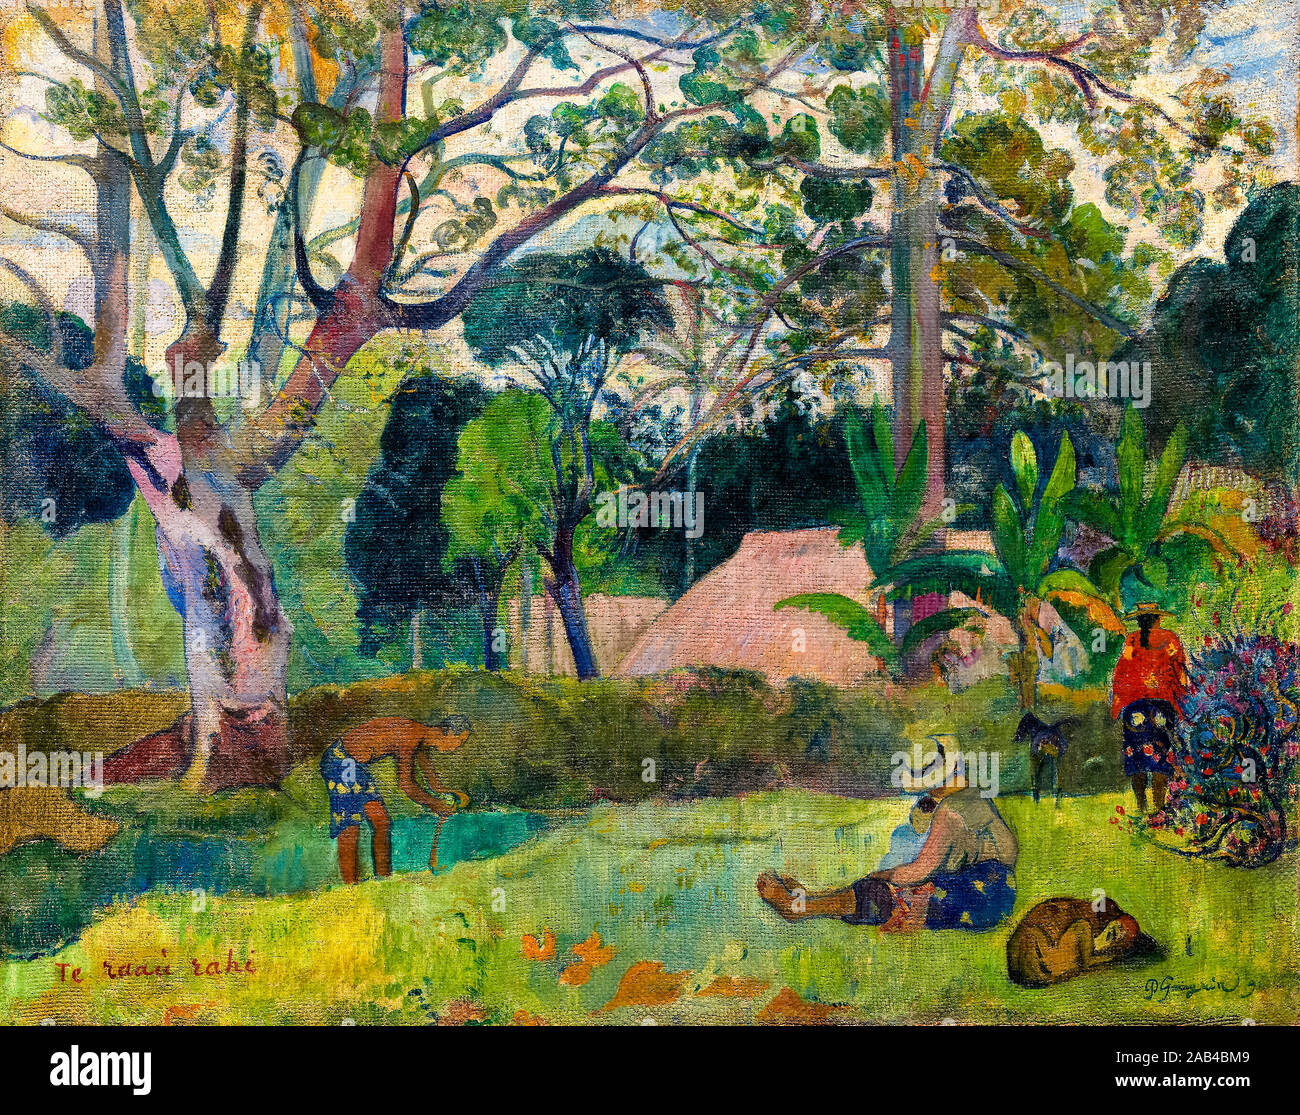 Paul Gauguin, Te raau rahi, (The Big Tree), painting, 1891 Stock Photo